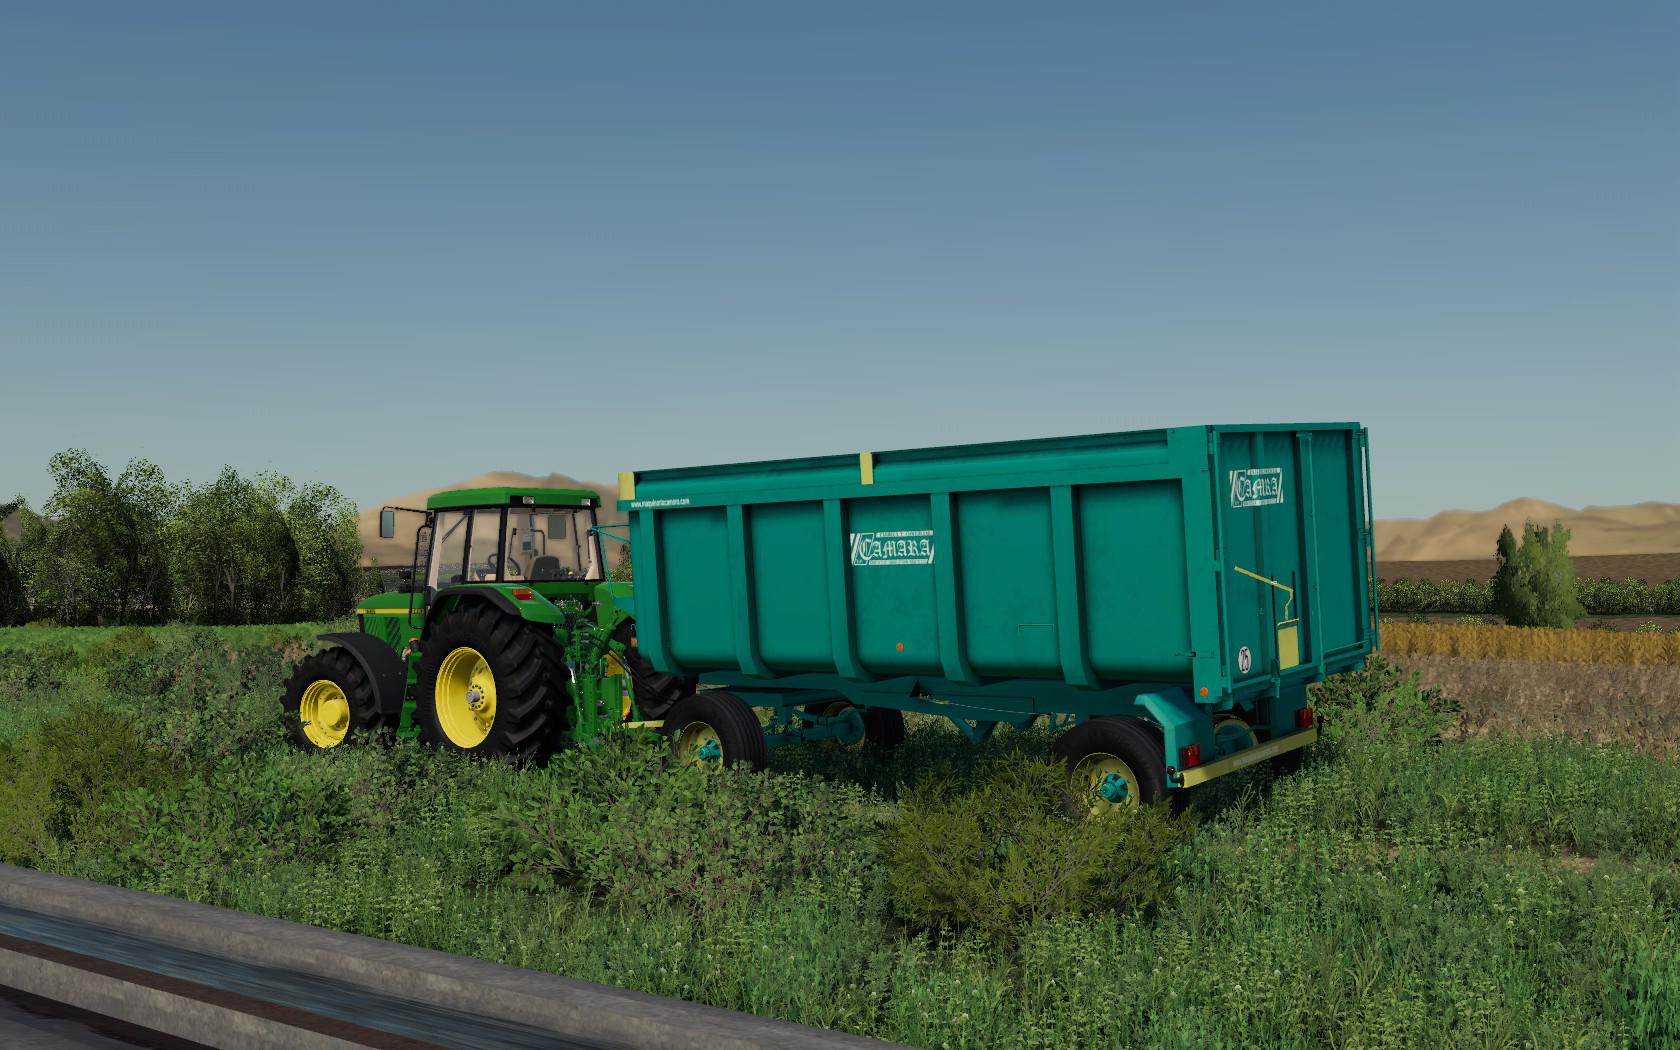 FS19 - Camara RT16 Trailer V2.0 | Farming Simulator 19 | Mods.club